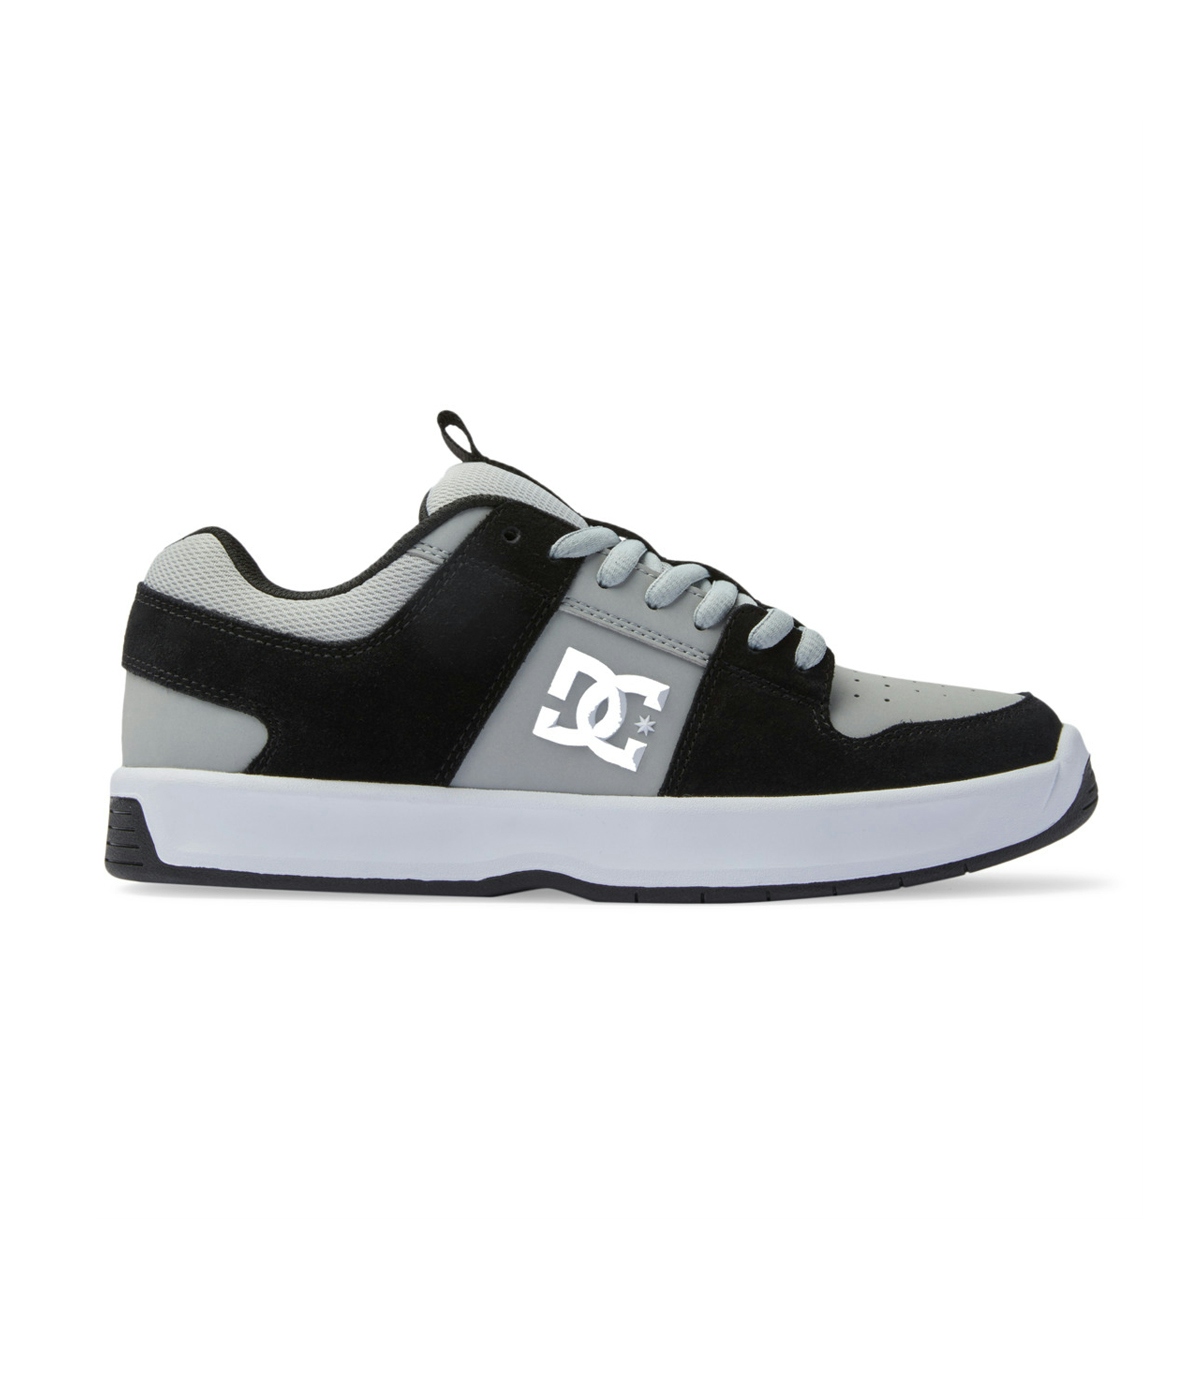 DC Shoes Lynx Zero Shoes Black/Grey/White 3